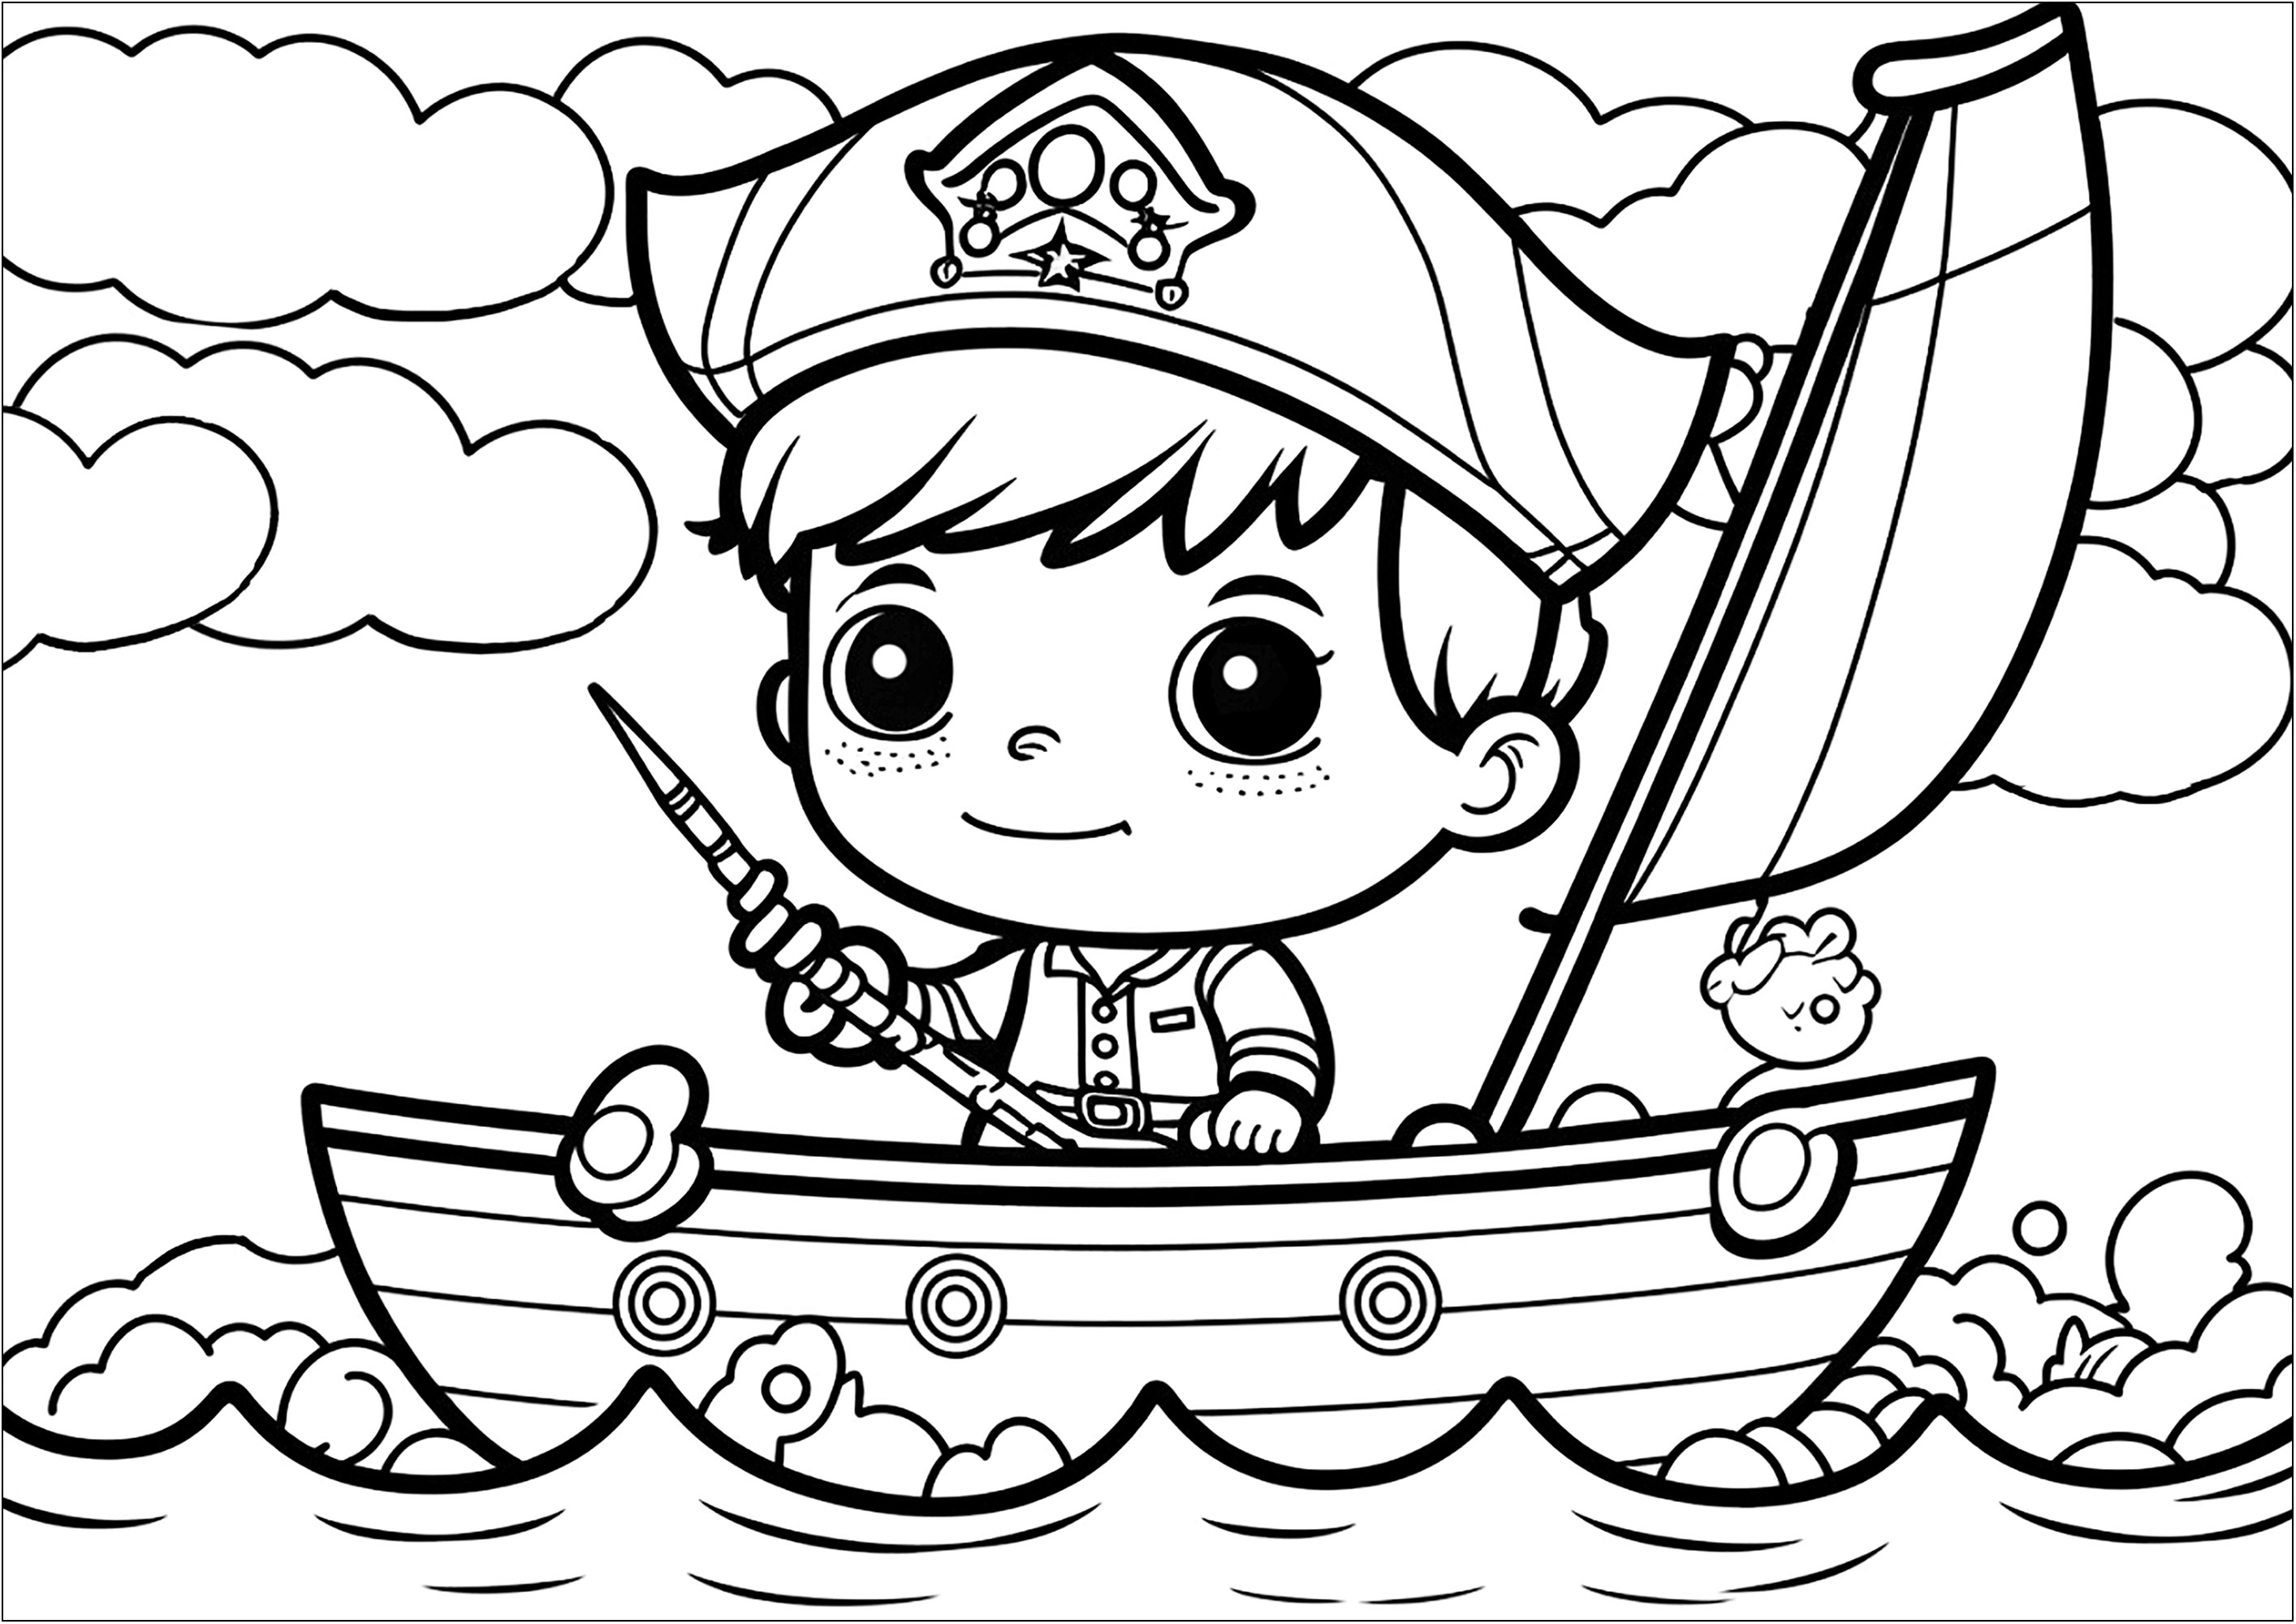 Coloriage simple d'un pirate au style Kawaii sur his bateau. Ce coloriage est parfait pour les enfants qui aiment les pirates et le style Kawaii ! Le dessin représente un petit pirate souriant en haut de son bateau.